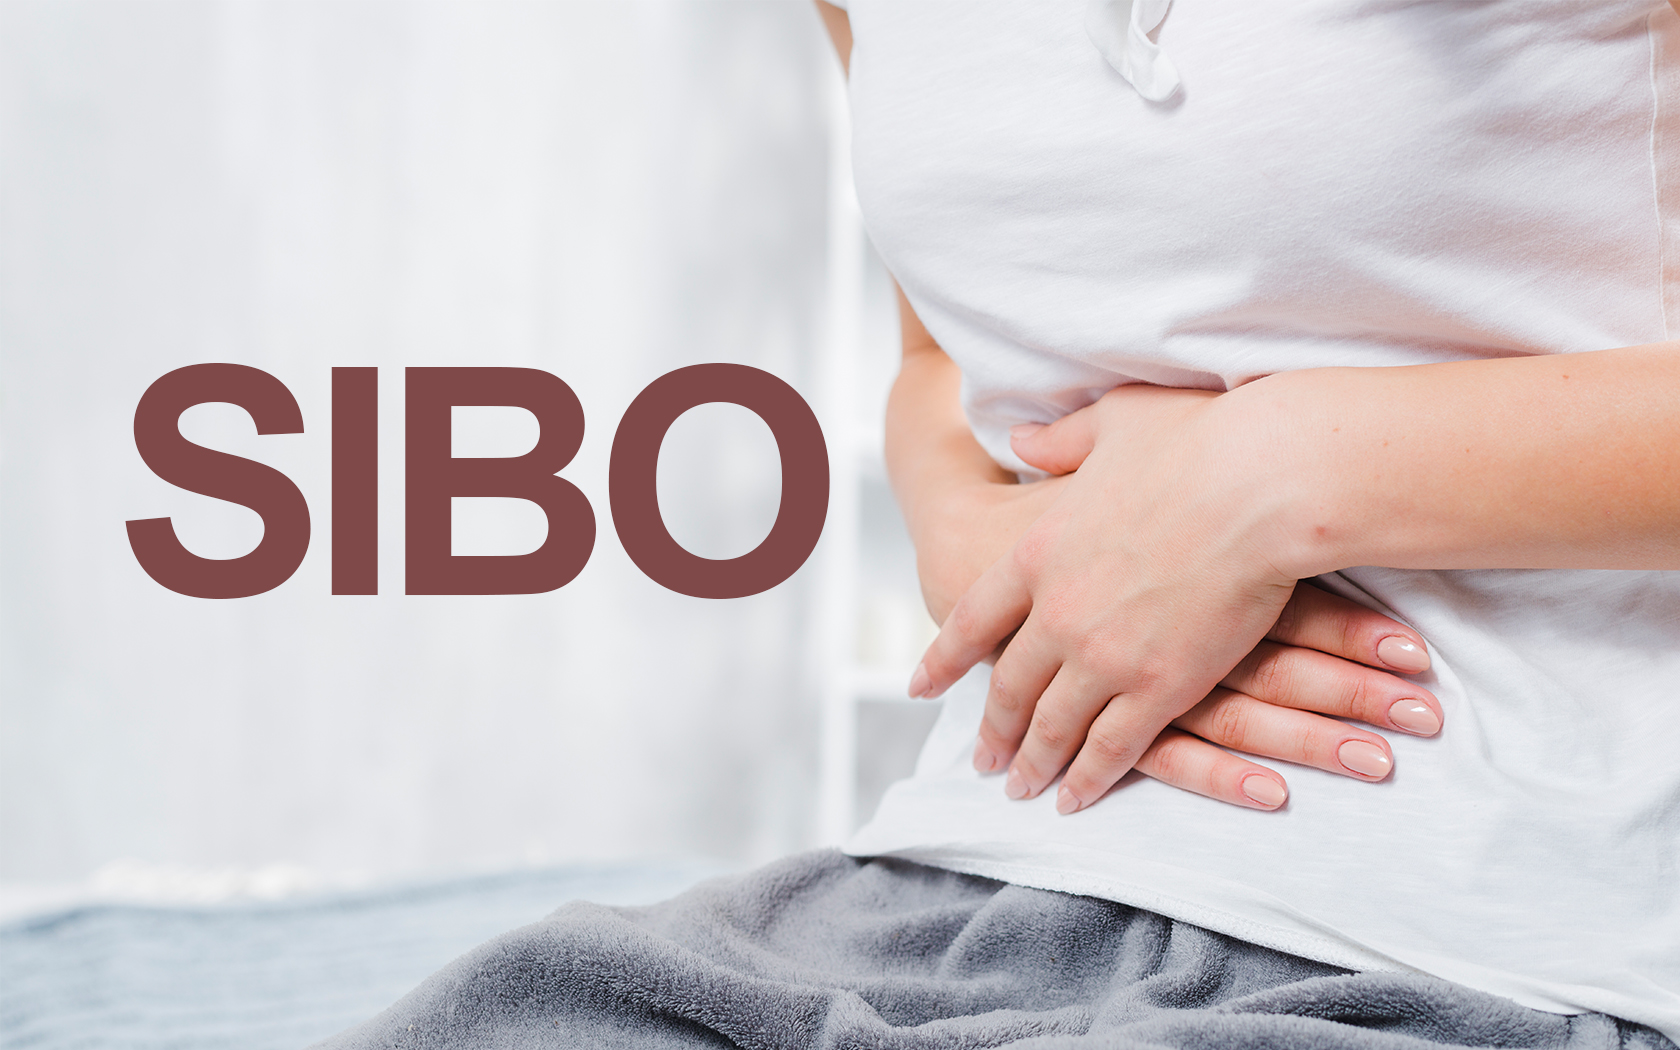 SIBO sibo sibonedir sindirim sindirimsistemi otoimmün immün salgı bağırsak incebağırsak kalınbağırsak pankreas beslenme spor hareket sağlık sağıklıyaşam drmelekvuslatözdoğan bütüncülyaklaşım bütüncültıp 